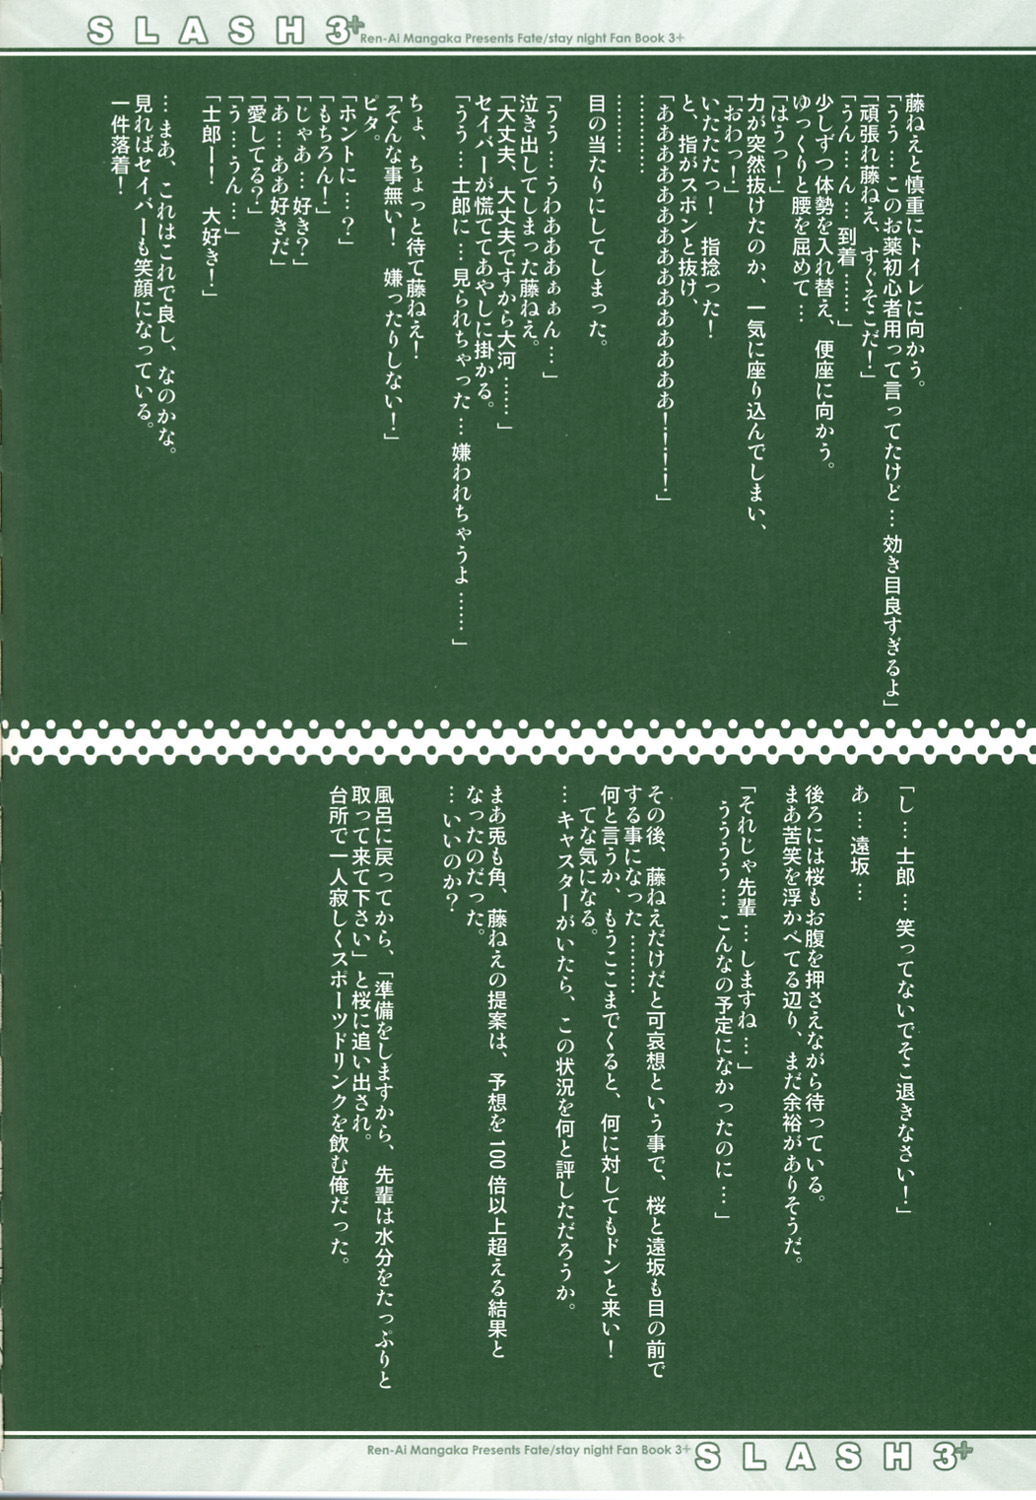 (CR36) [Renai Mangaka (Naruse Hirofume)] SLASH 3 + (Fate/stay night) page 12 full